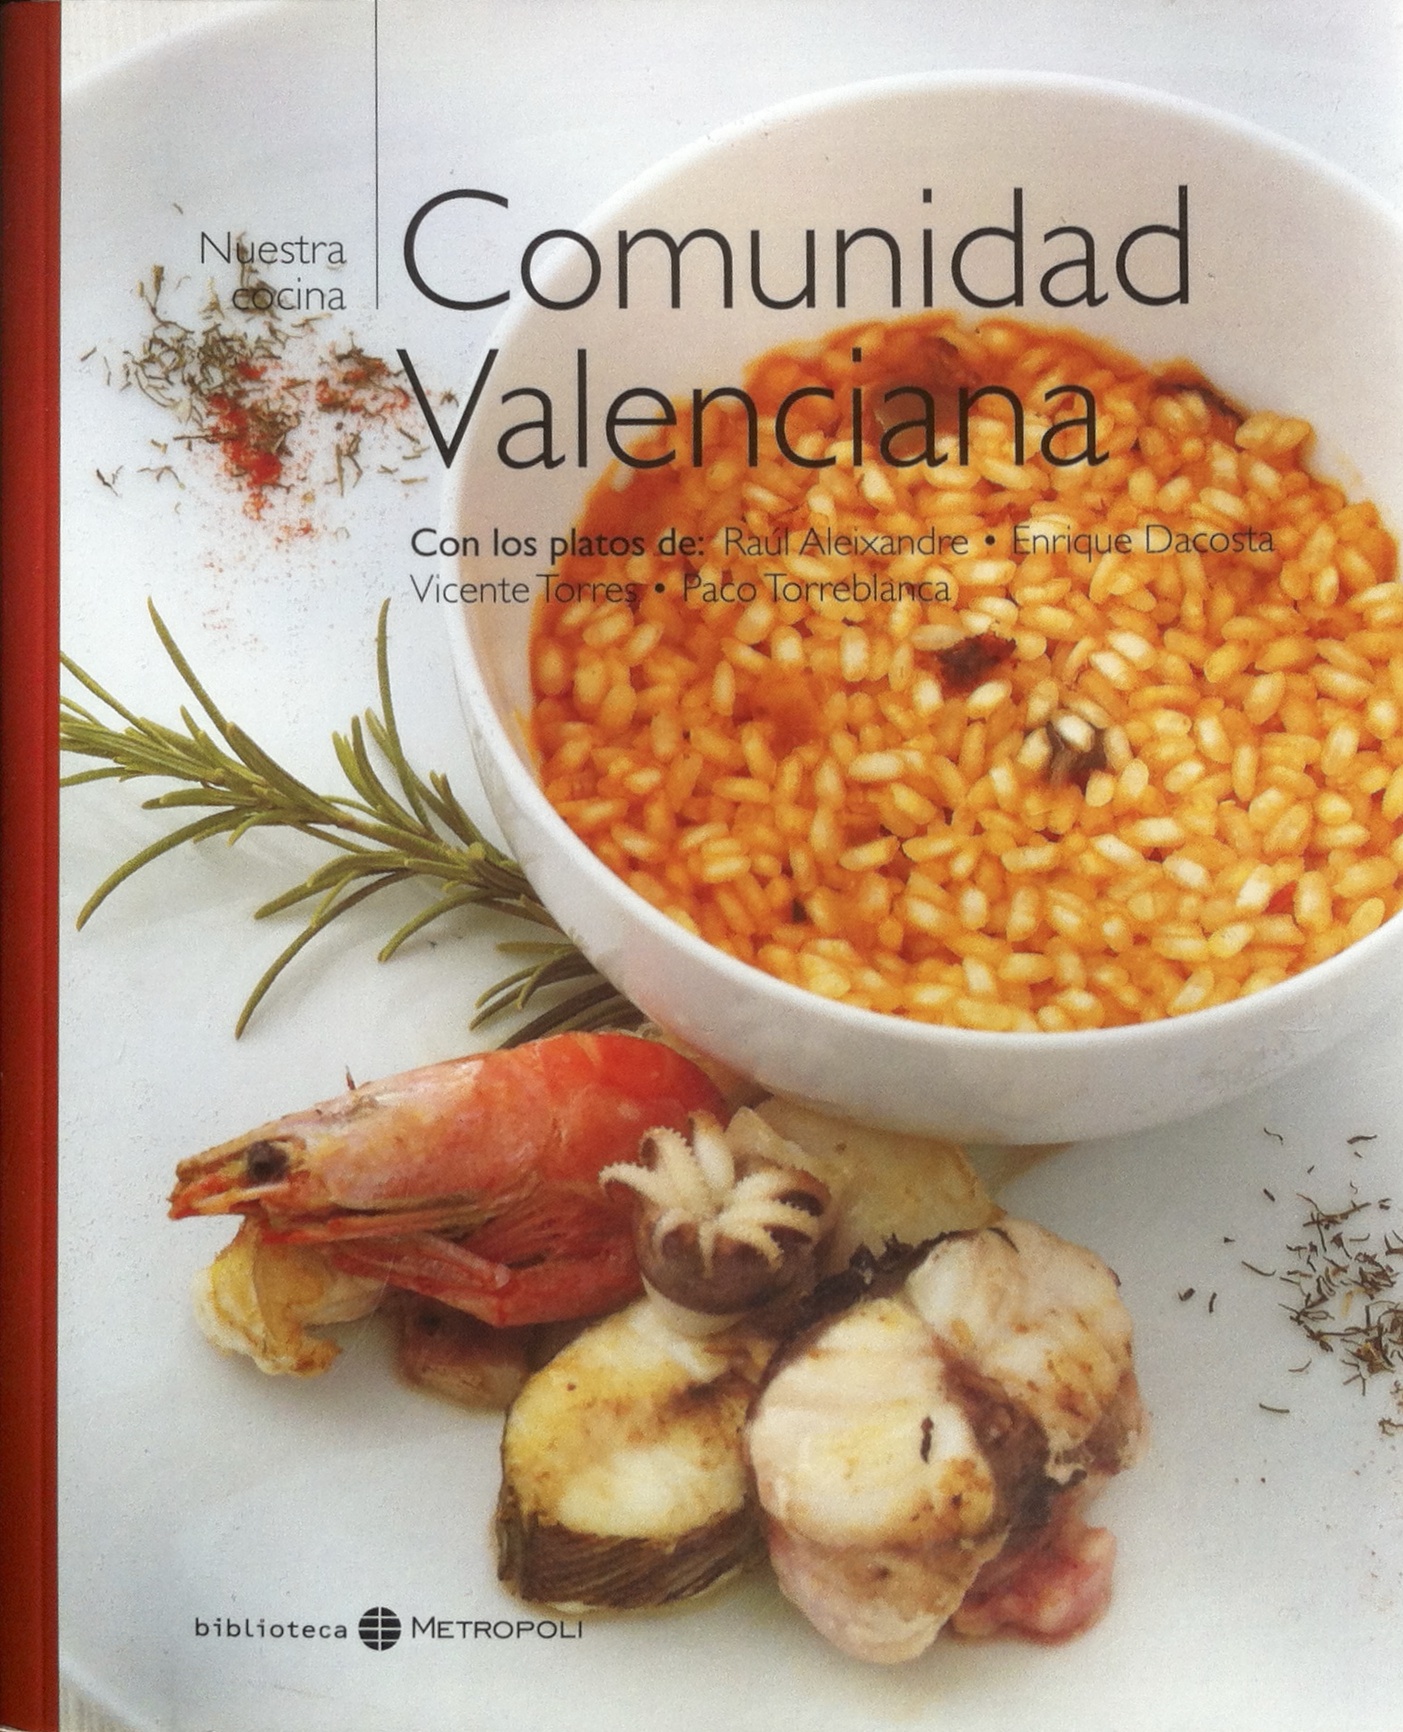 Livre sur la Paella "Nuestra Cocina Comunidad Valenciana"